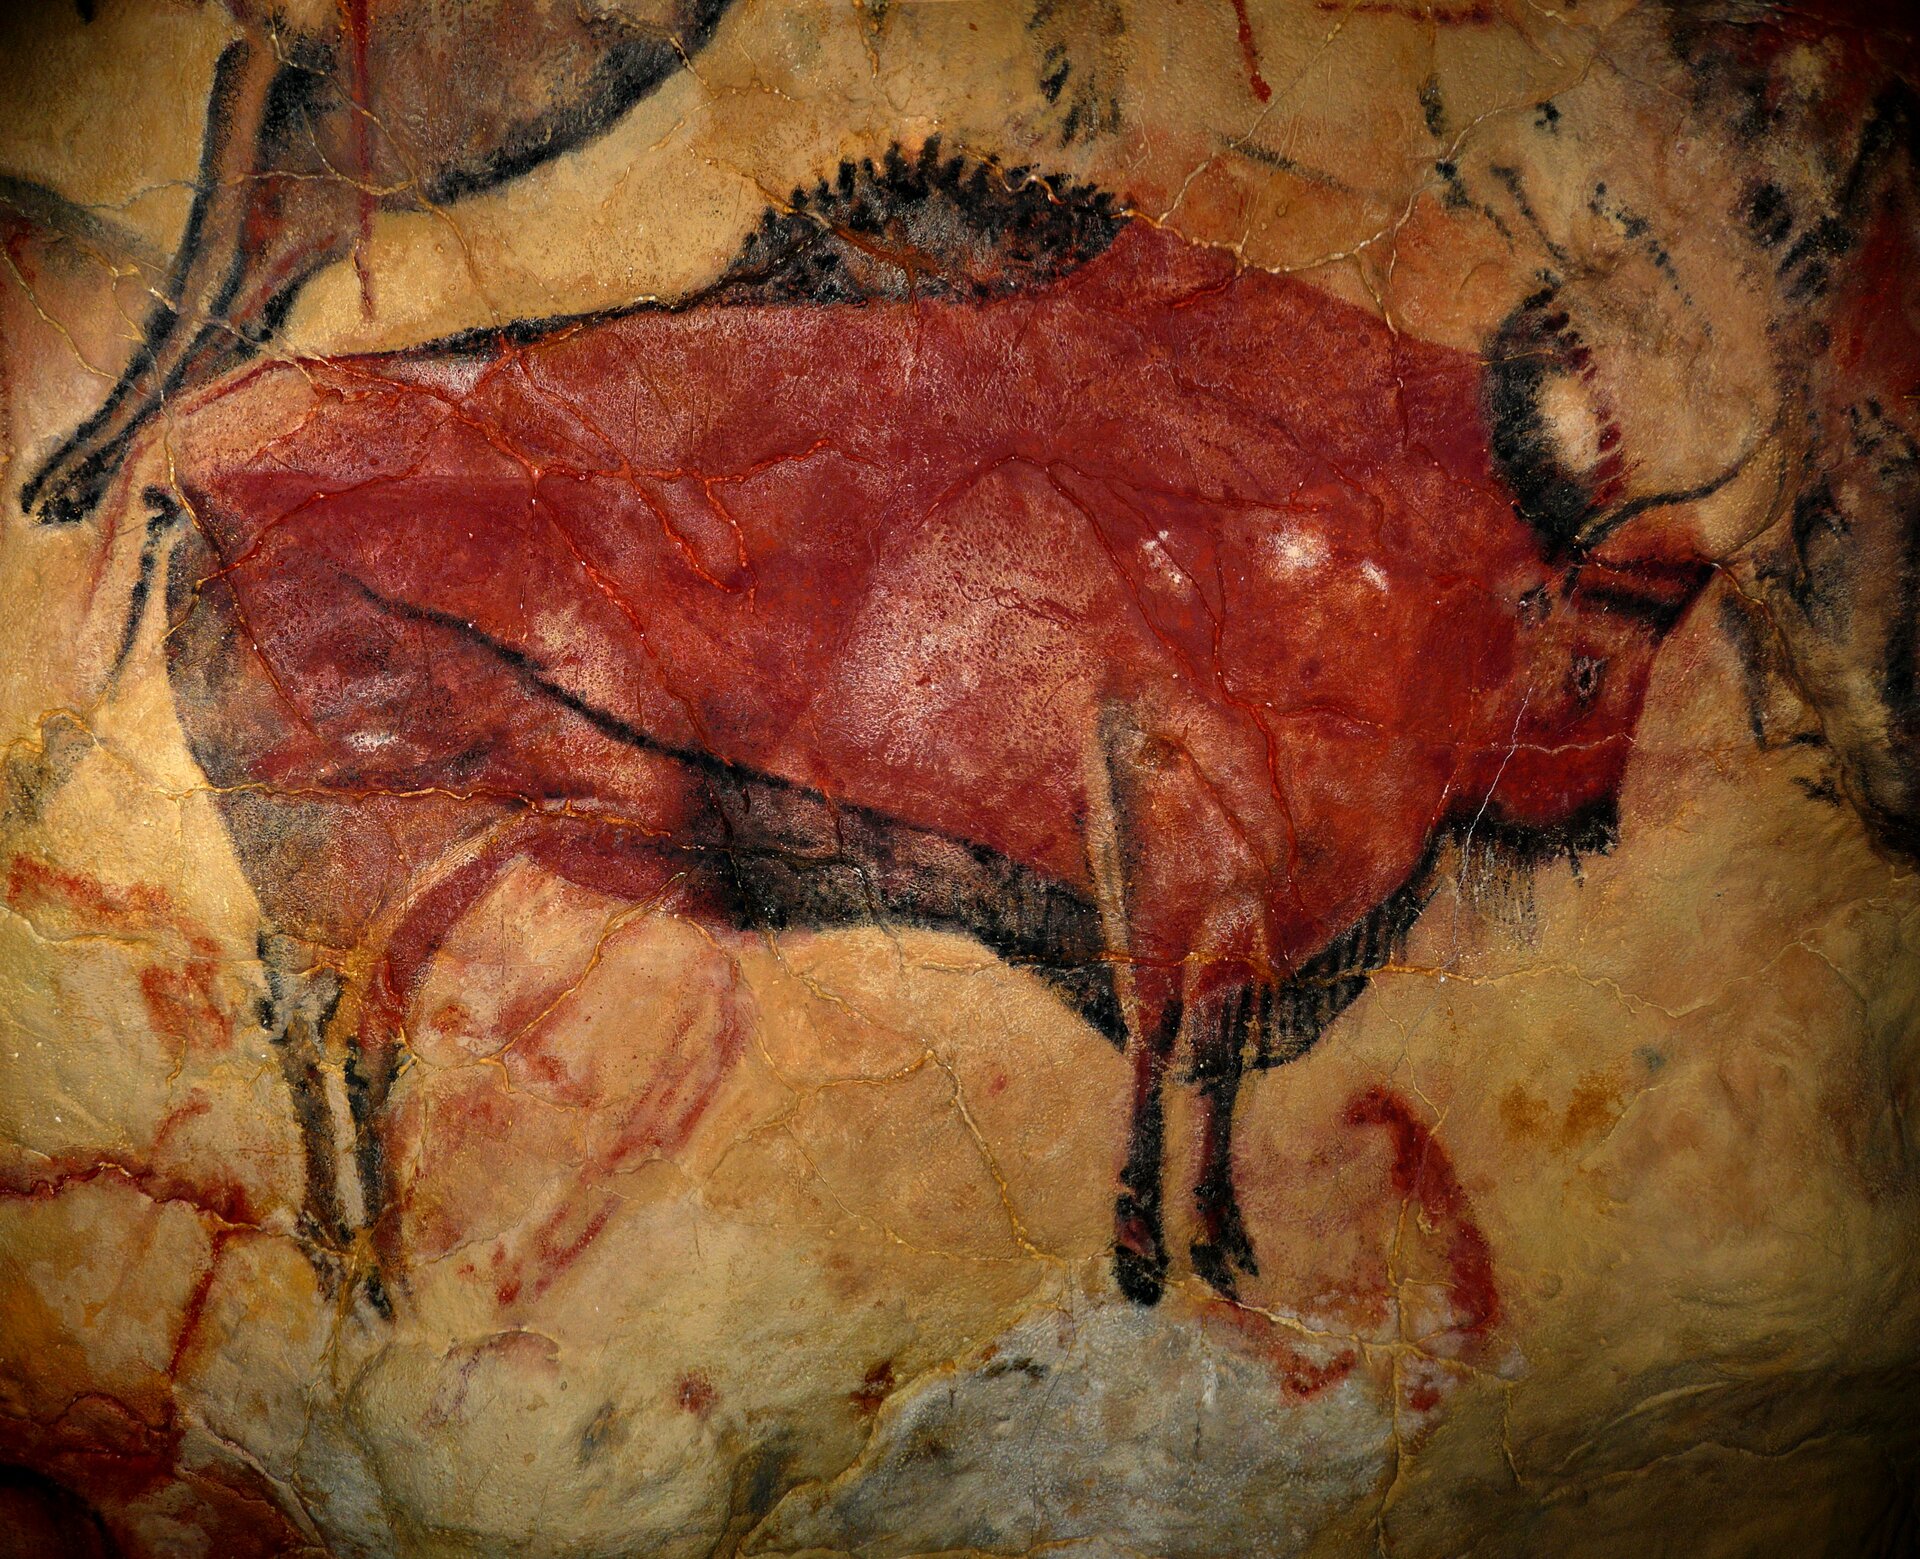 Rysunek na ścianie w jaskini przedstawiający bizona namalowany czerwoną farbą. Zwierzę narysowano w sposób schematyczny z profilu. Zaznaczono na nim oko, rogi, nos i włosie na grzbiecie zwierzęcia. Stoi na czterech nogach. Tło dookoła rysunku zwierzęcia koloru jasnożółtego. W lewej górnej krawędzi widoczny fragment innego zwierzęcia, w kolorze bladobrązowym.